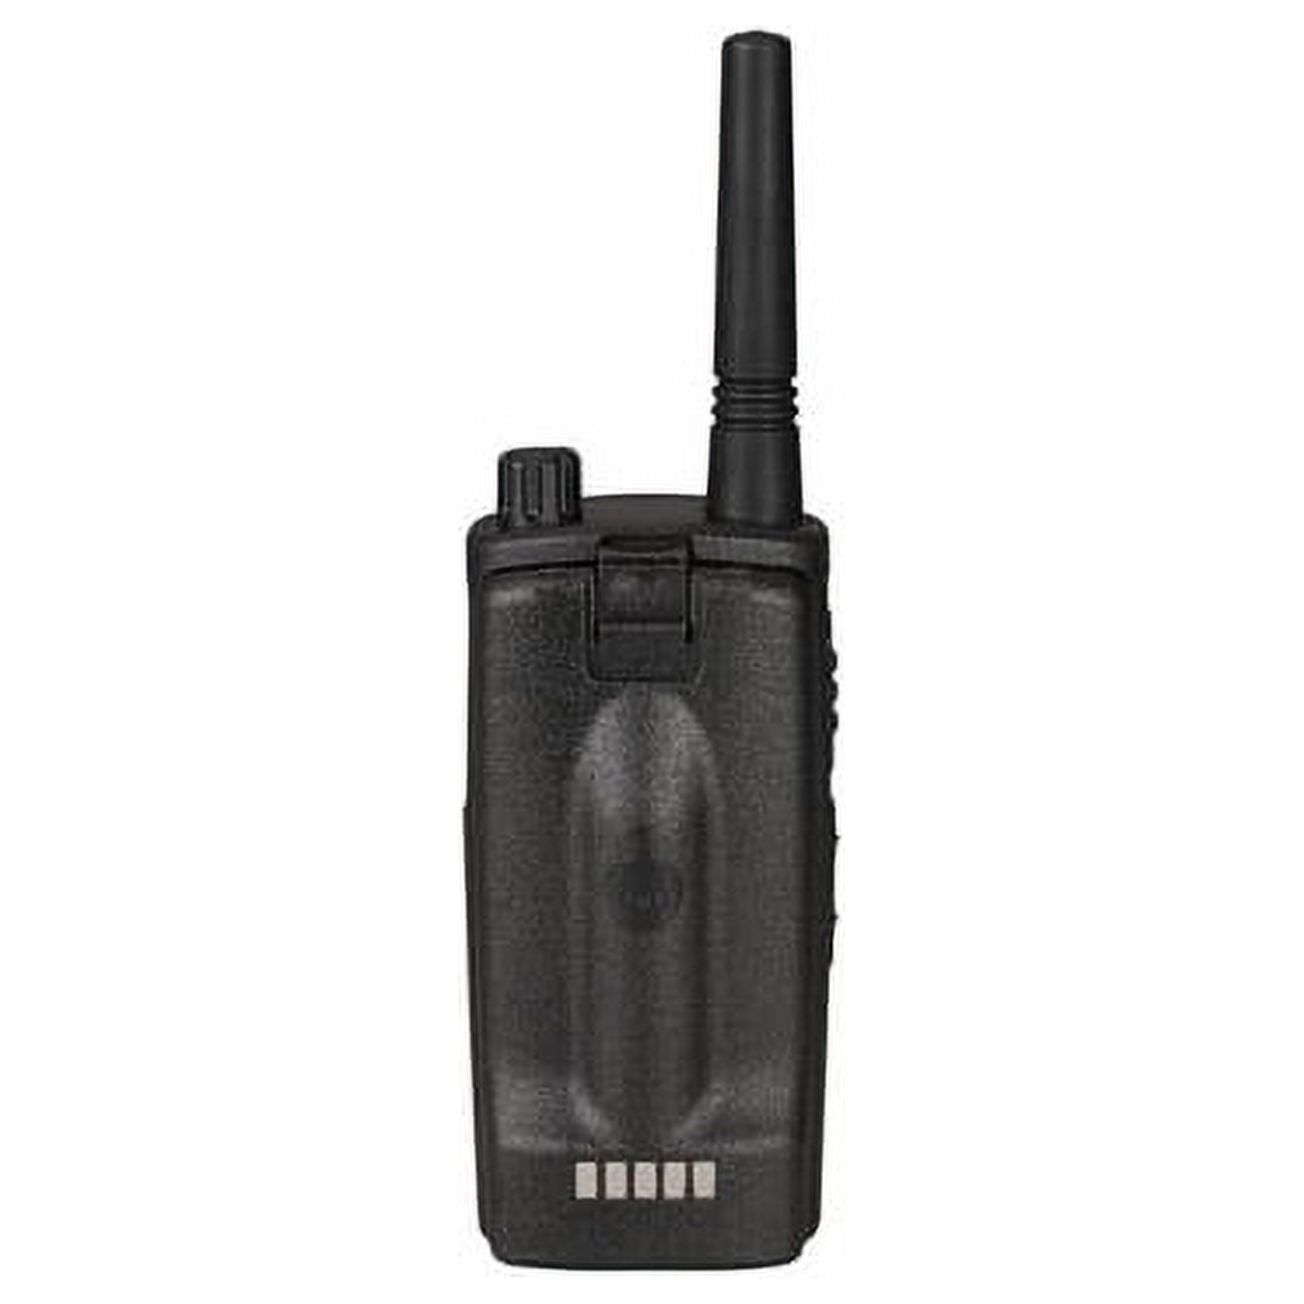 Pack of Motorola RMU2040 Two way Radio Walkie Talkies (UHF)